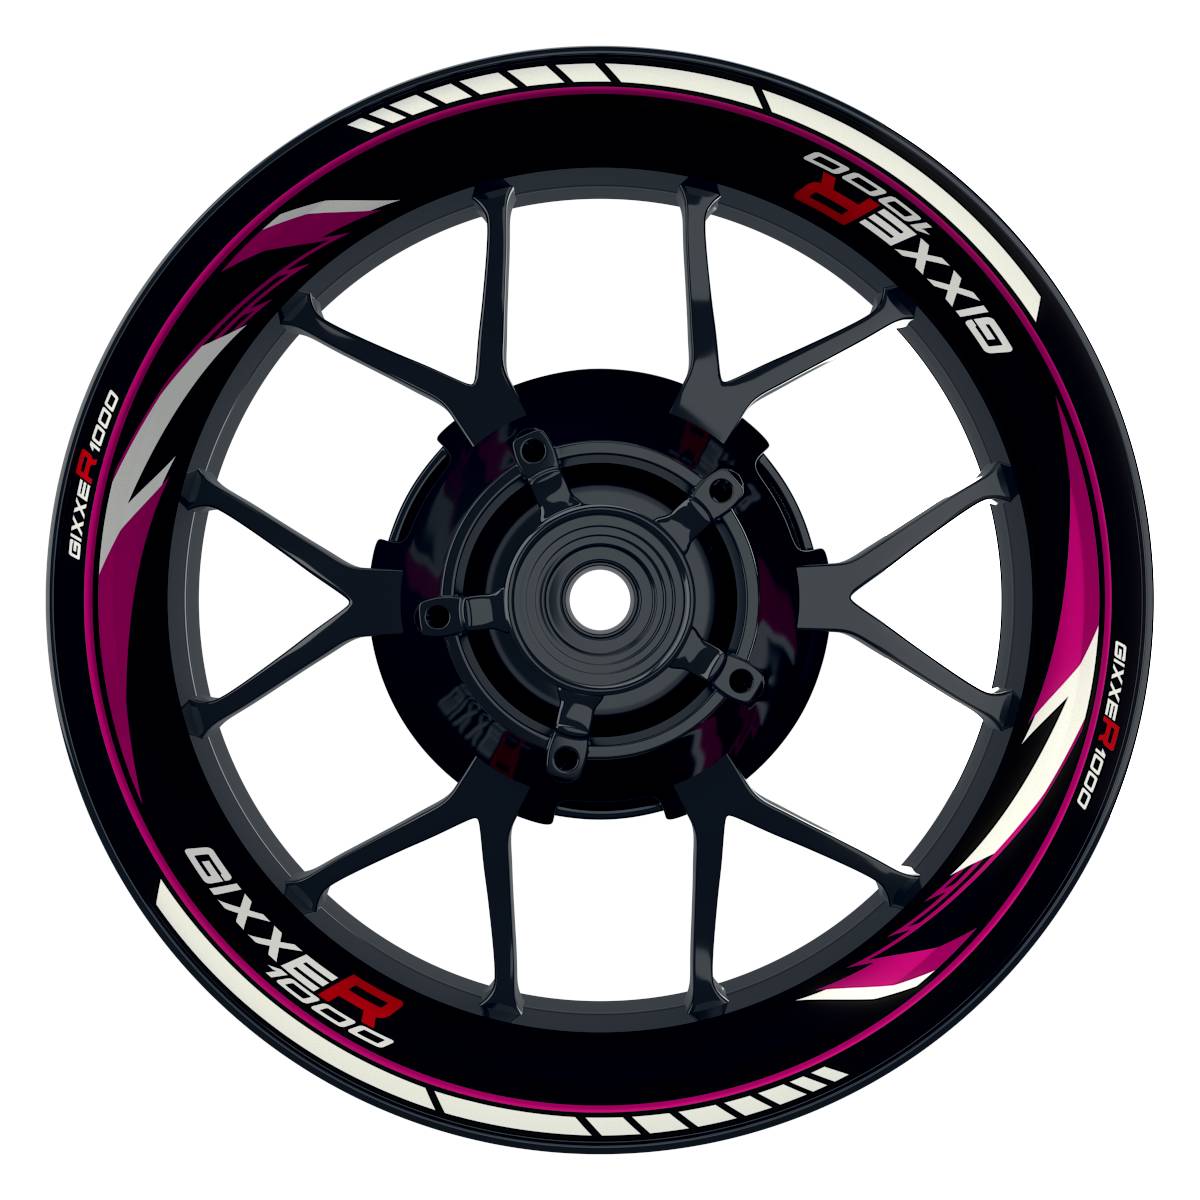 GIXXER1000 Razor schwarz pink Wheelsticker Felgenaufkleber